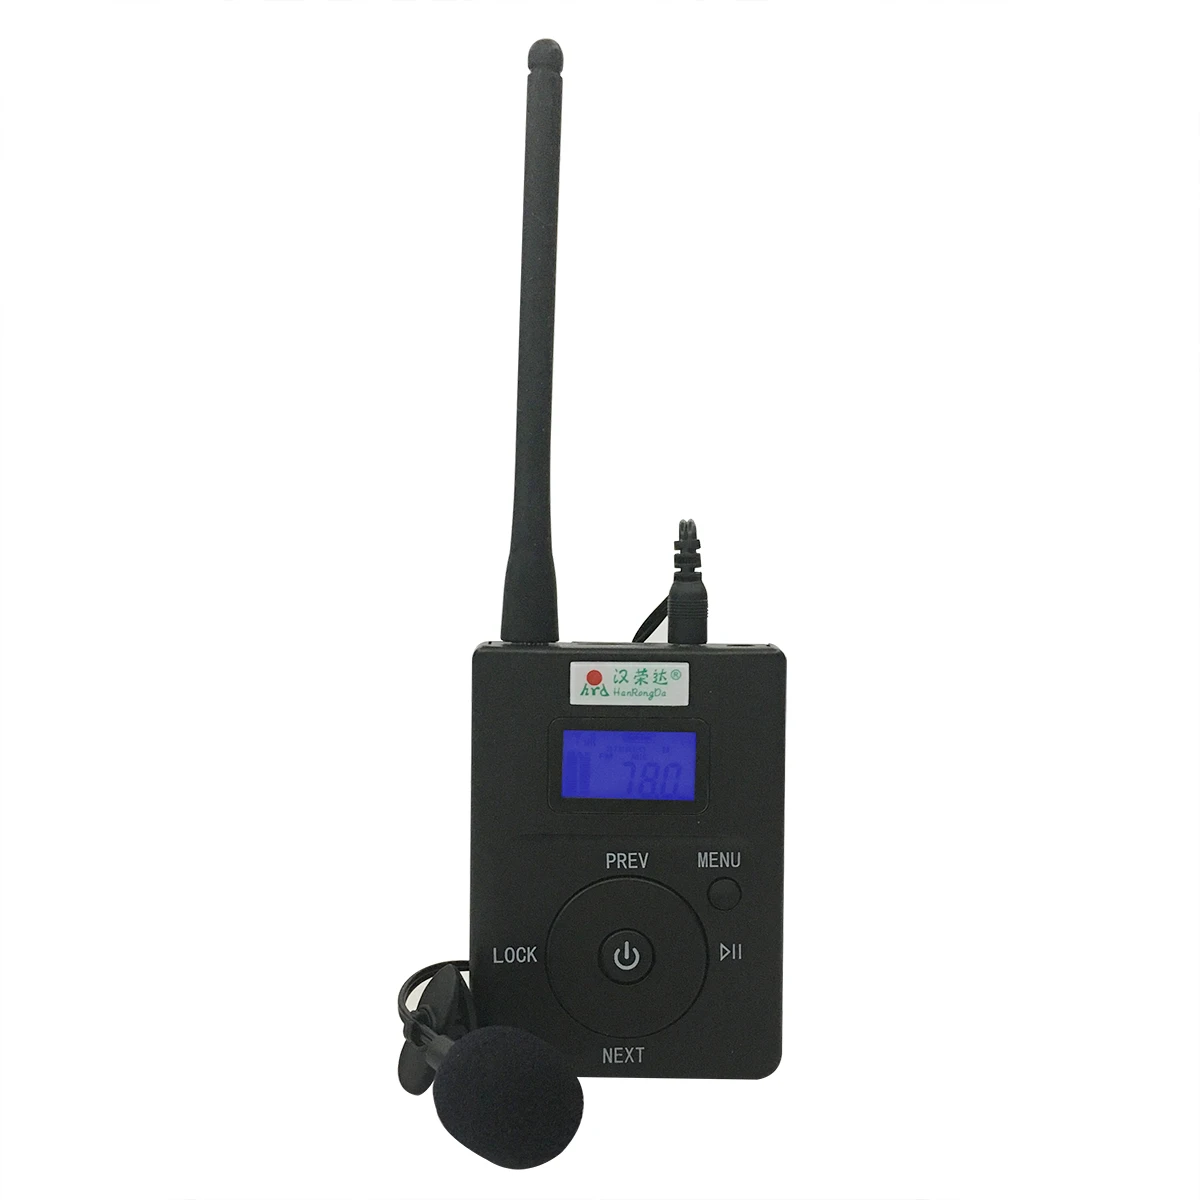 Mini přenosné stereo digitální FM vysílač FM rozhlasové stanice vysílání s mikrofonem audio spuštění 500 metrů HDR-831  t